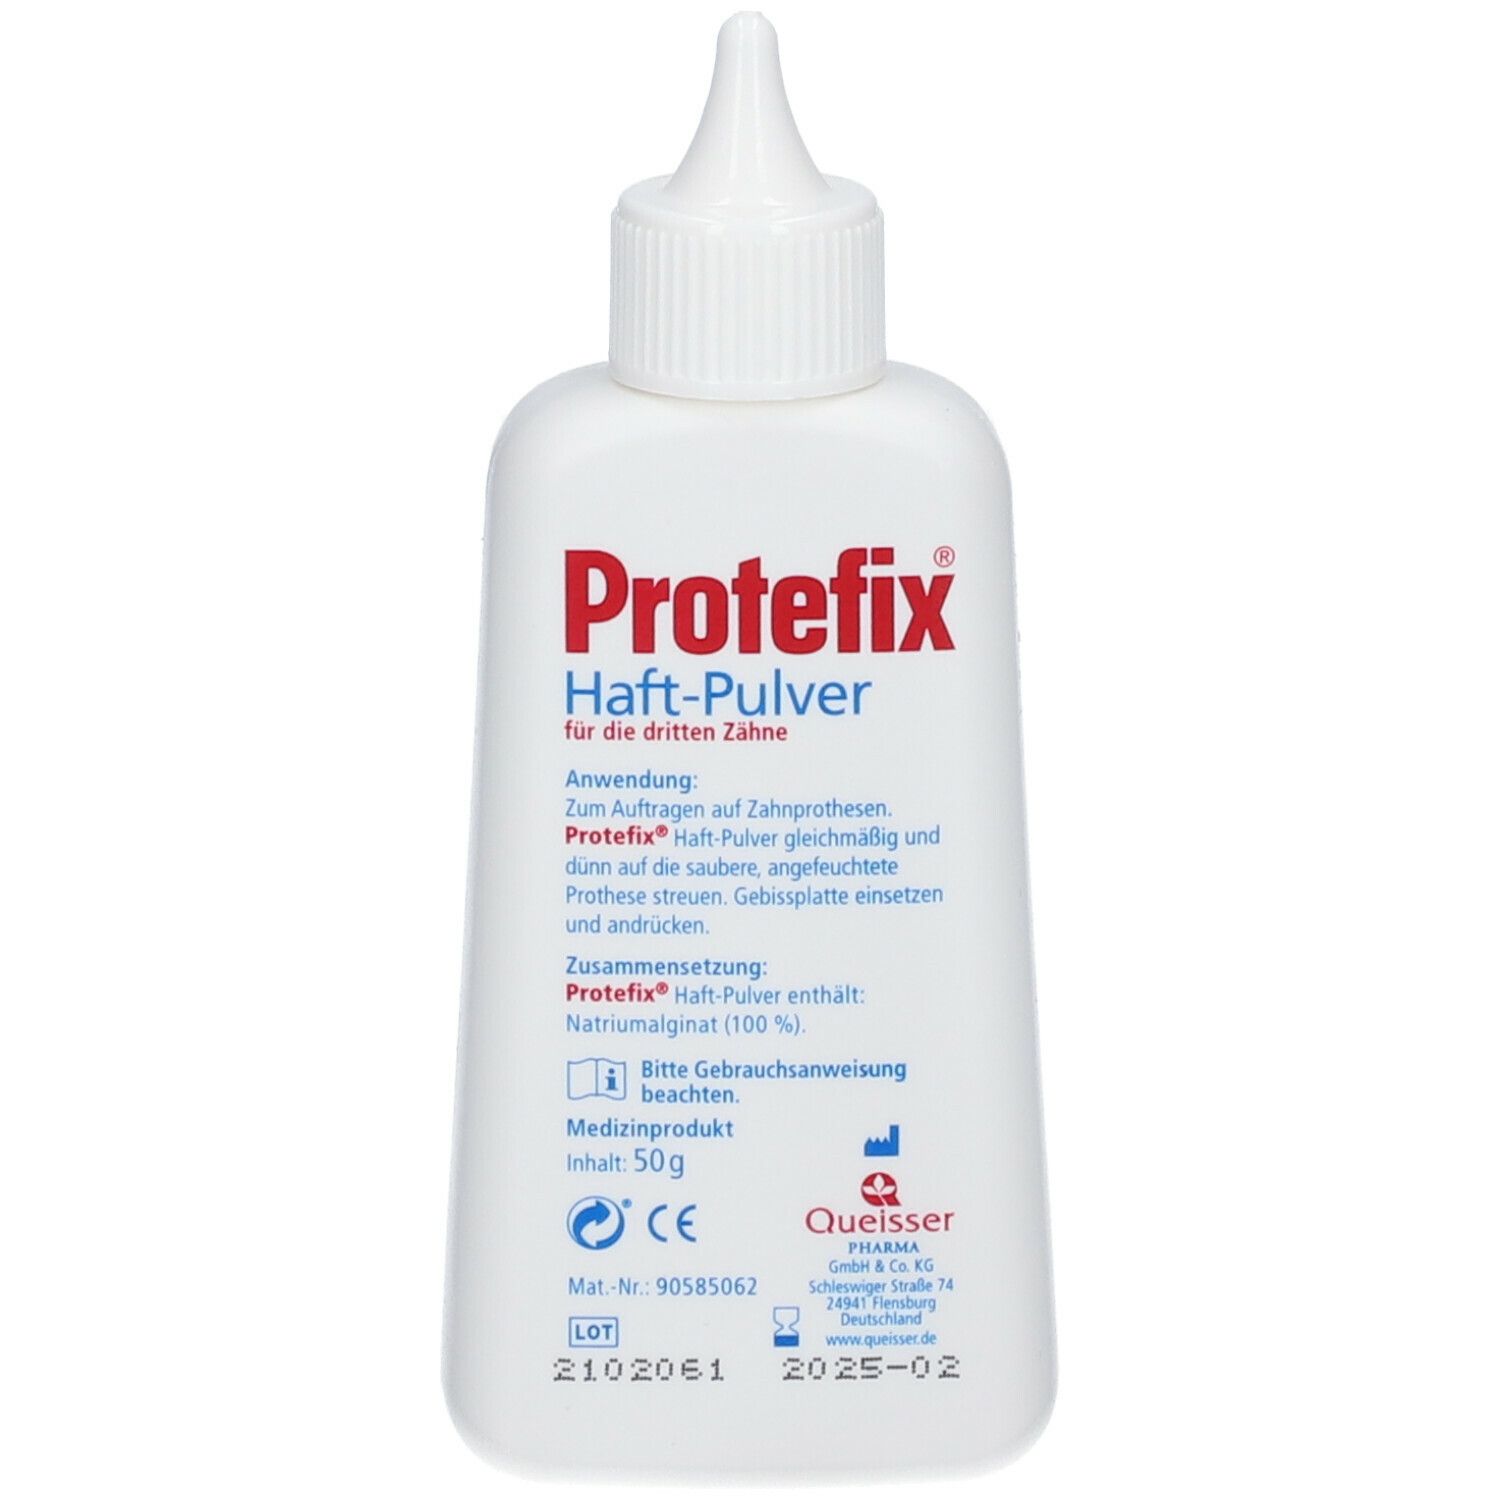 Protefix® Poudre Adhésive